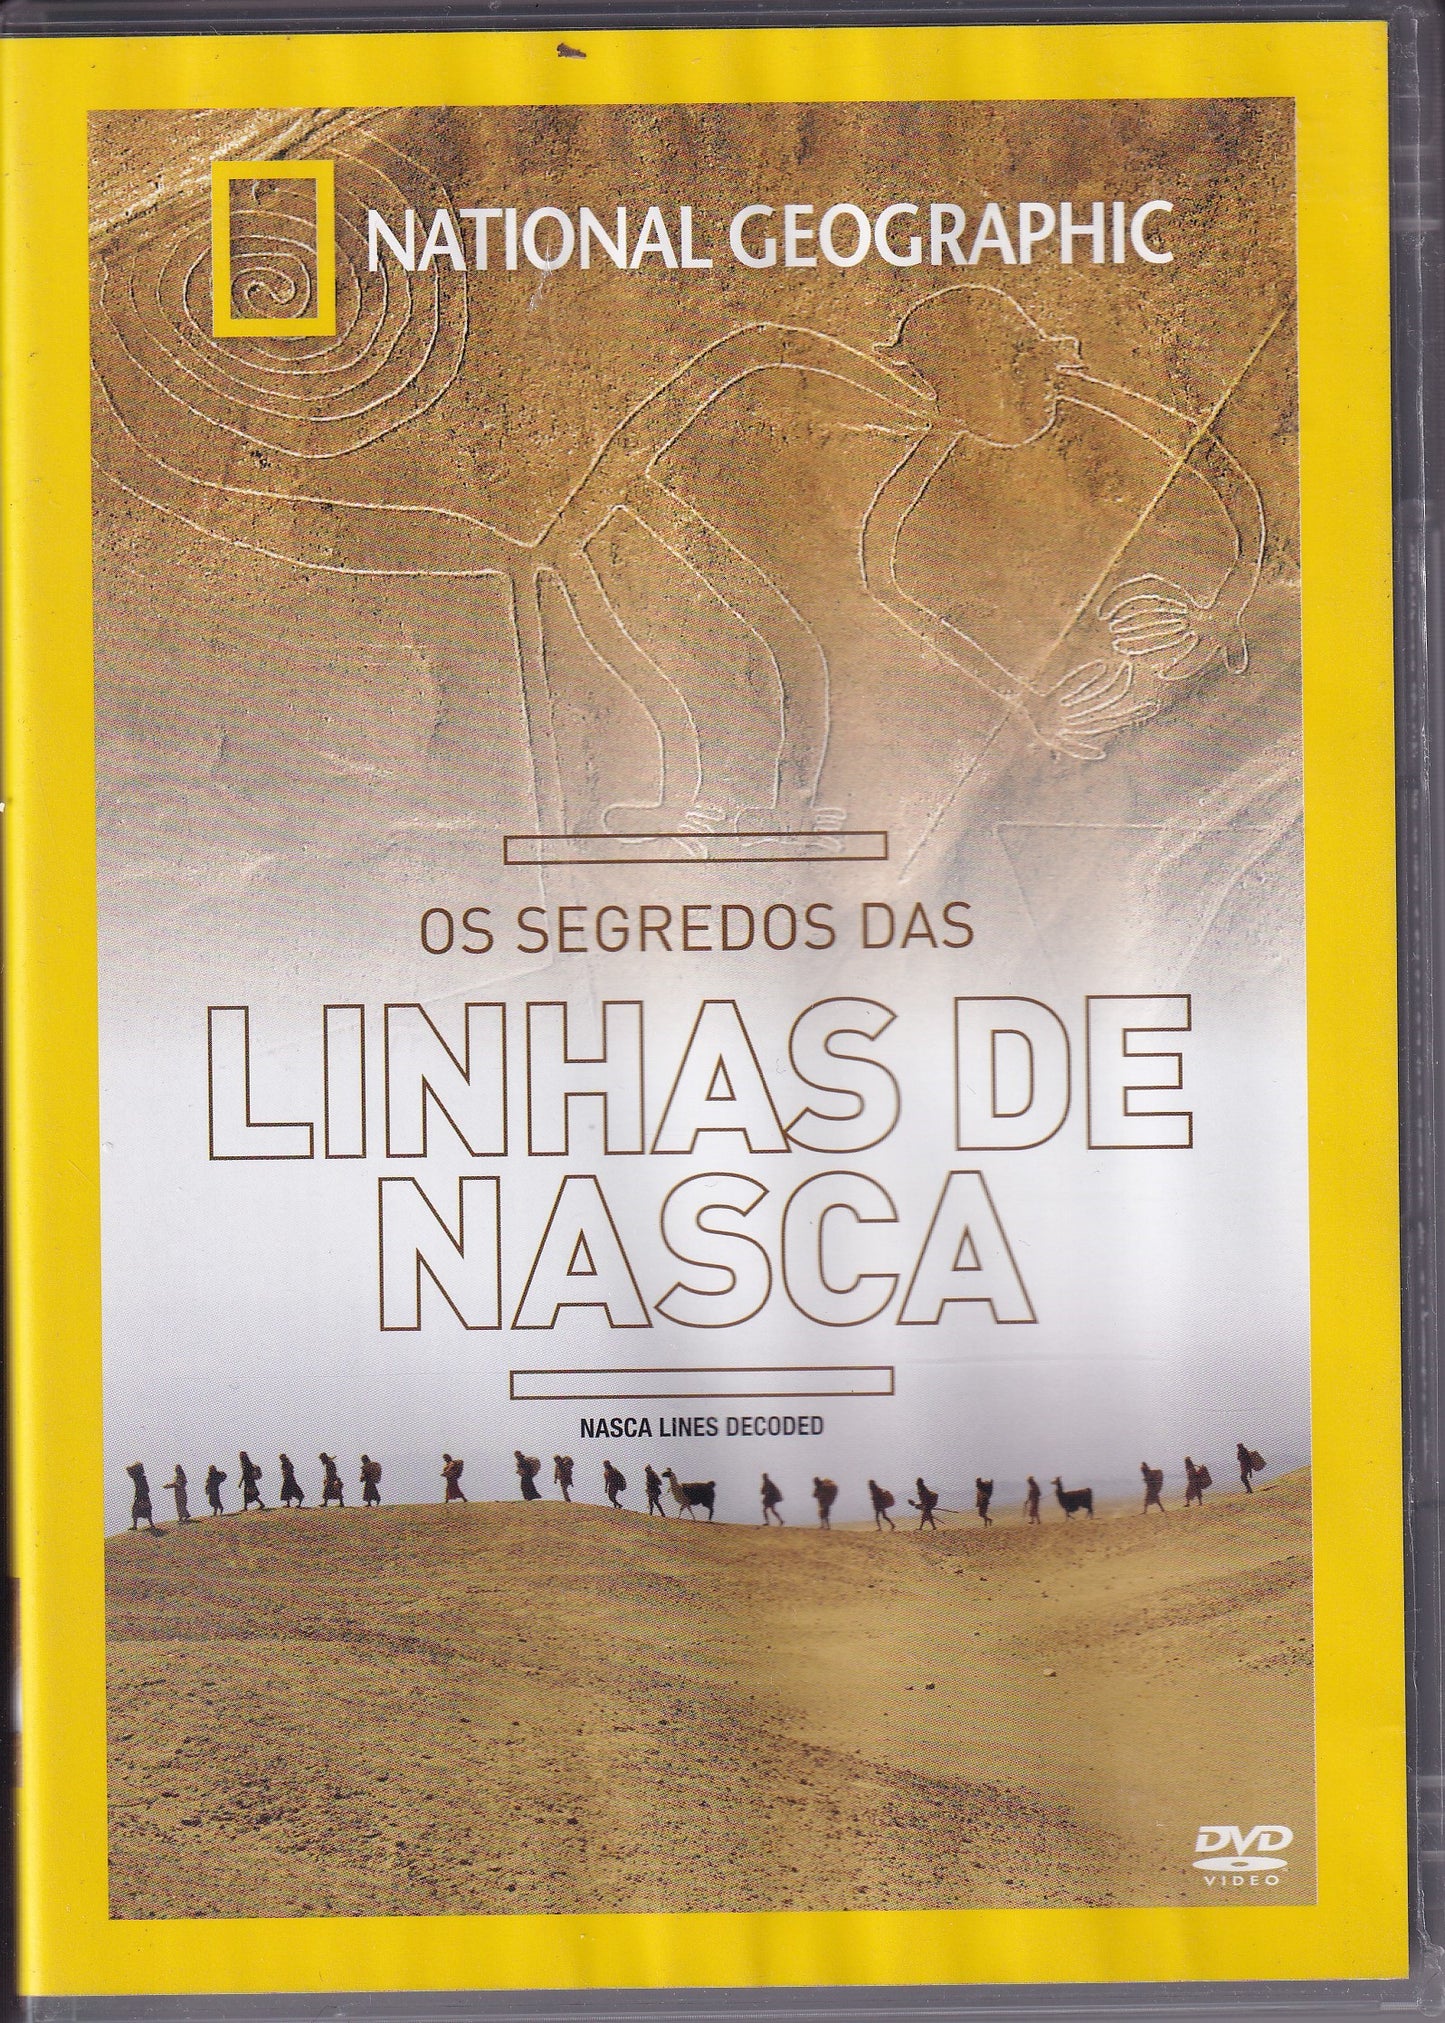 DVD NATIONAL GEOGRAPHIC OS SEGREDOS DAS LINHAS DE NASCA - USADO